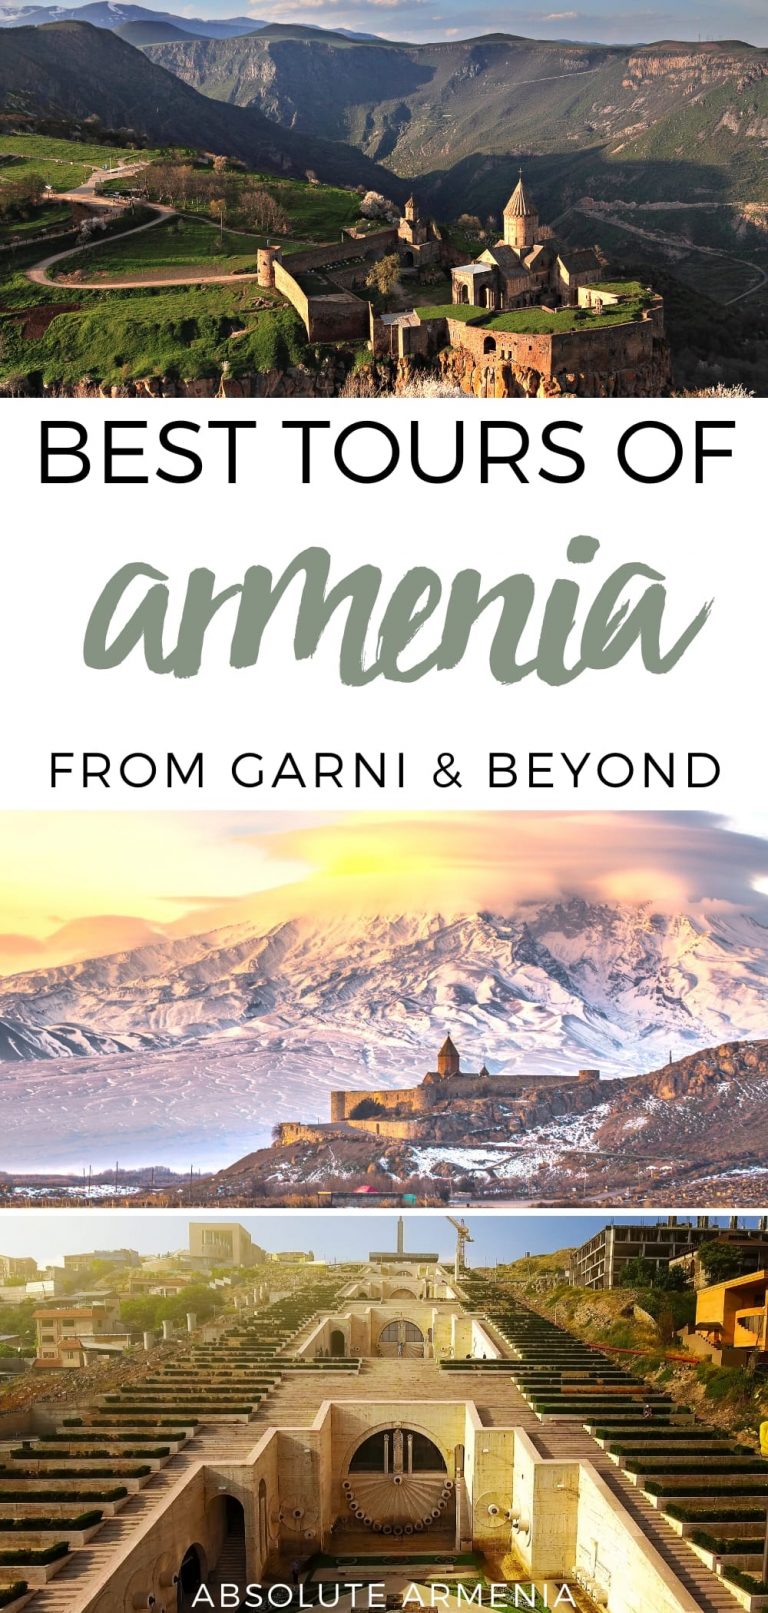 armenia tour groups